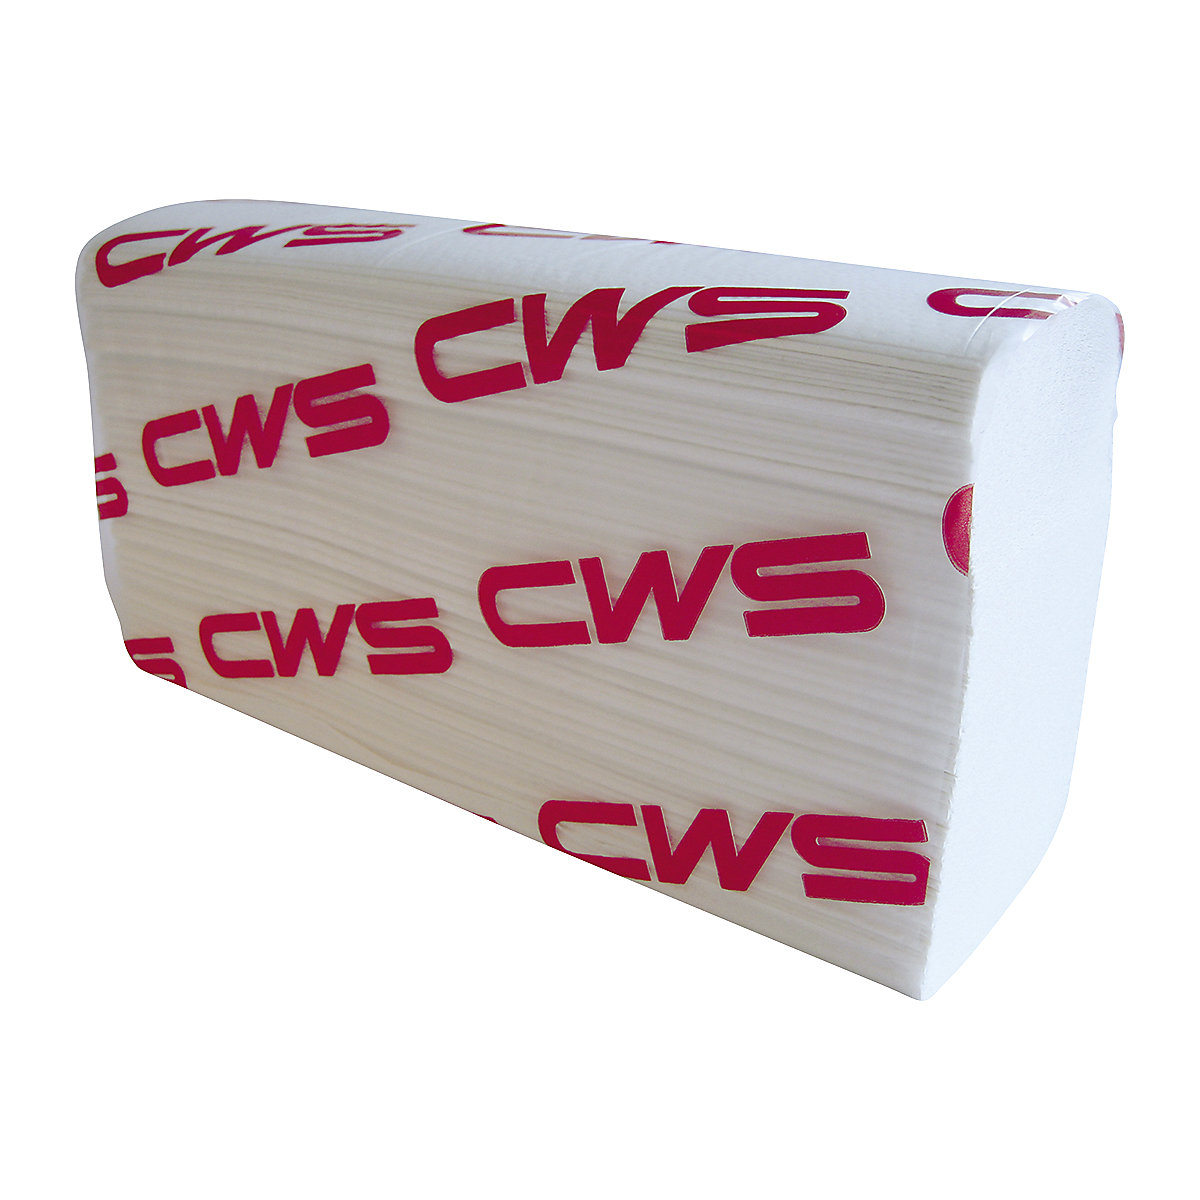 Hajtogatott papírtörlő, Multifold – CWS